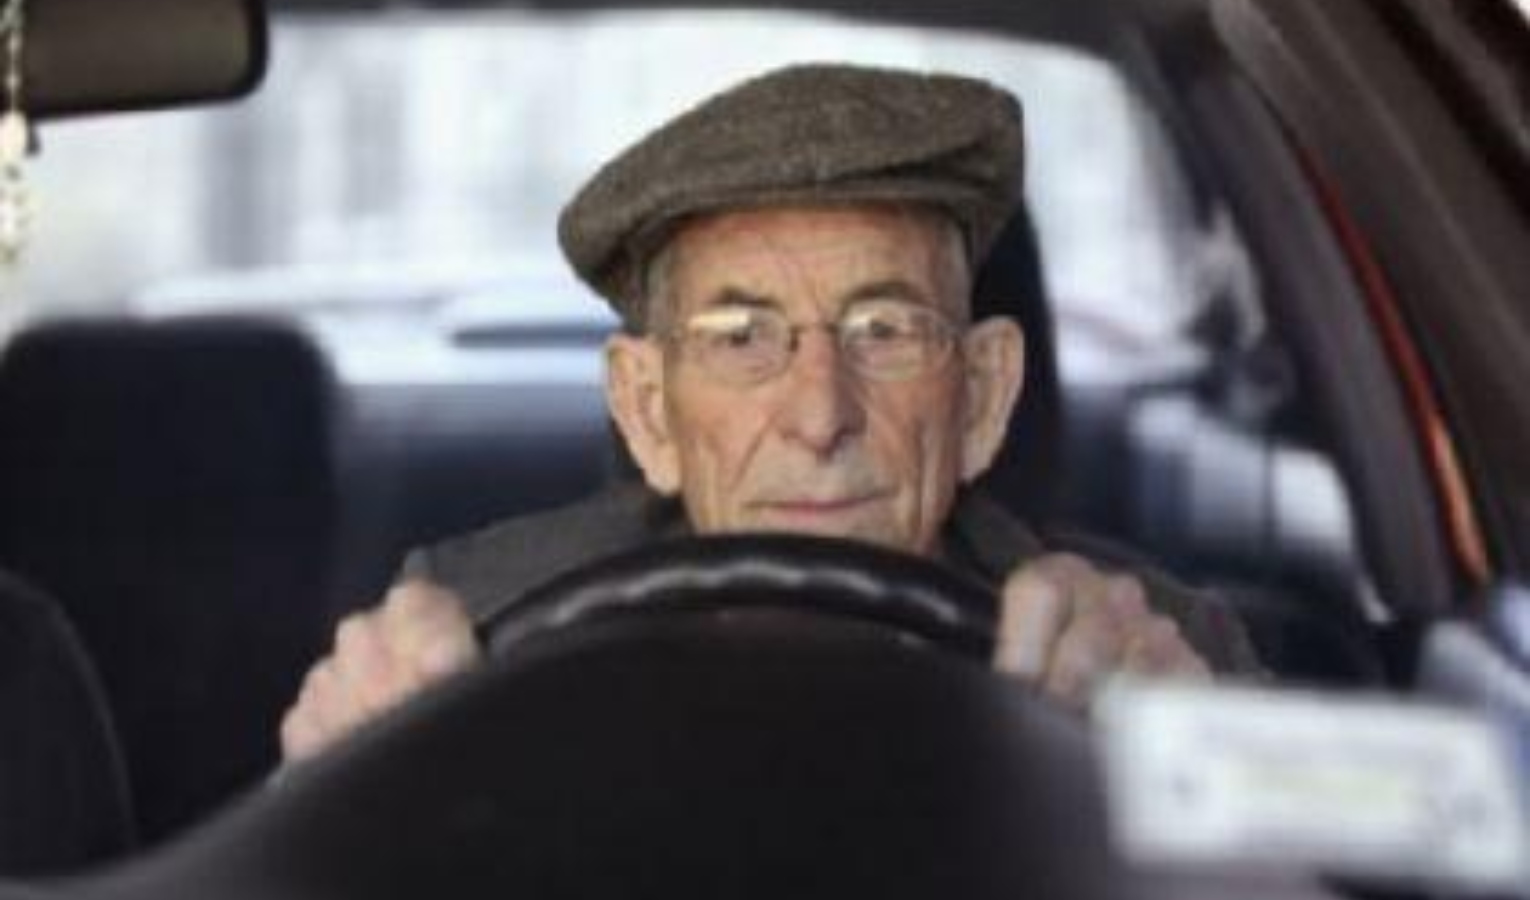 Anziani alla guida, Genova dice sì ai corsi di sicurezza gratis per over 70